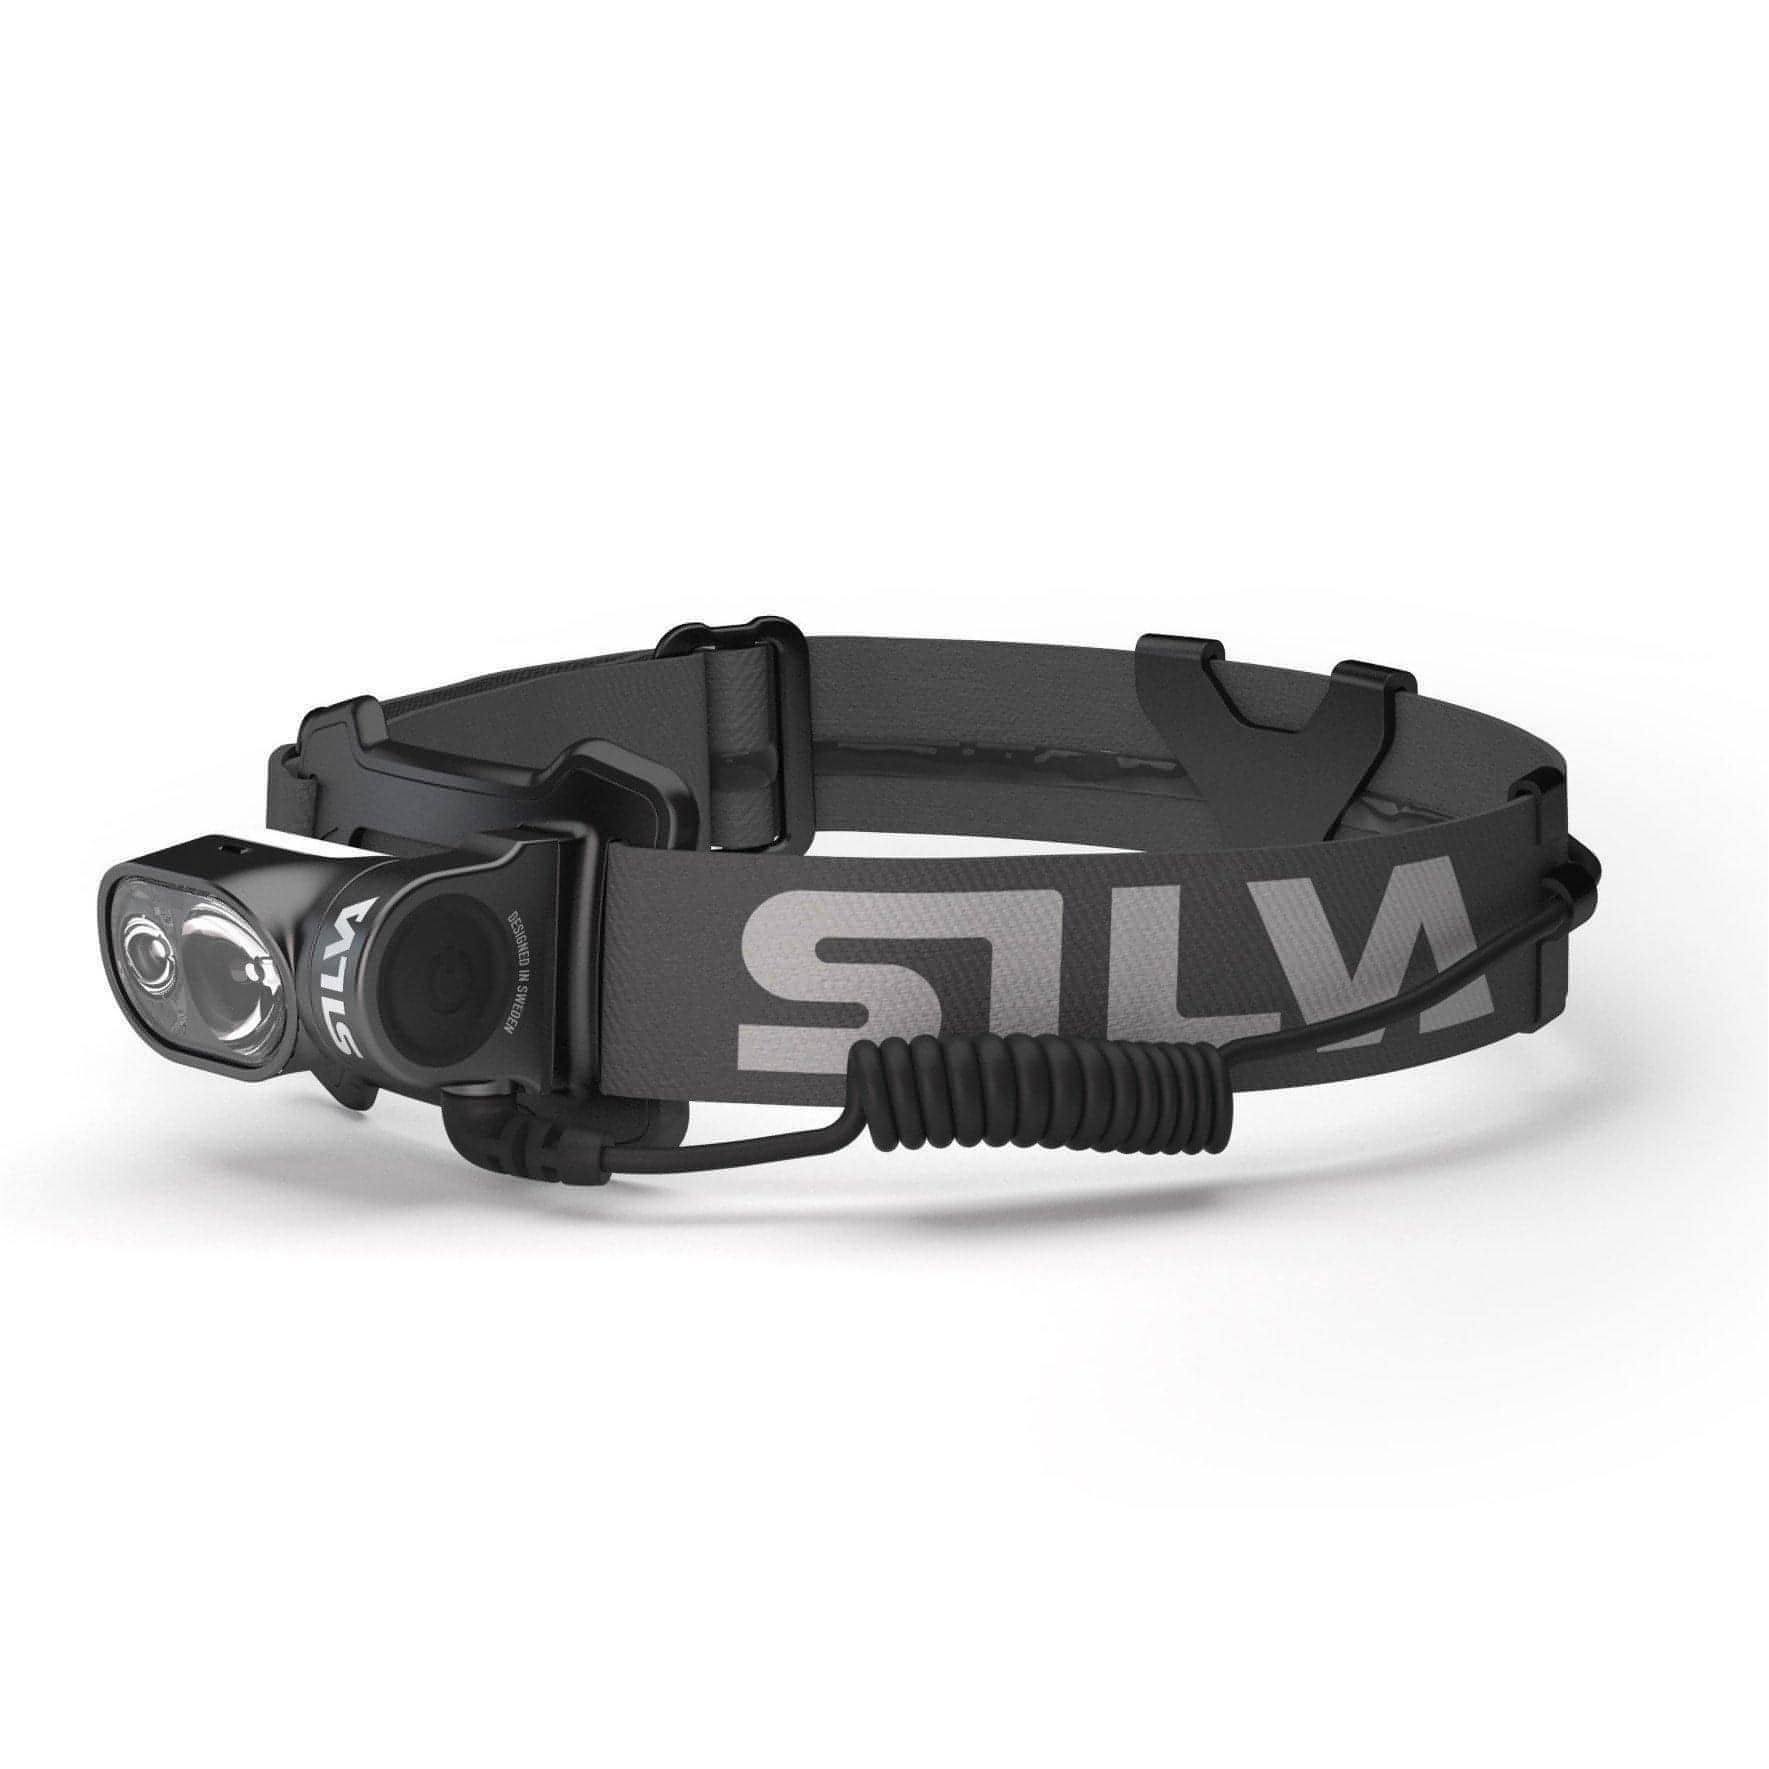 Silva Cross Trail 6X Head Torch - Black 7318860200571 - Start Fitness